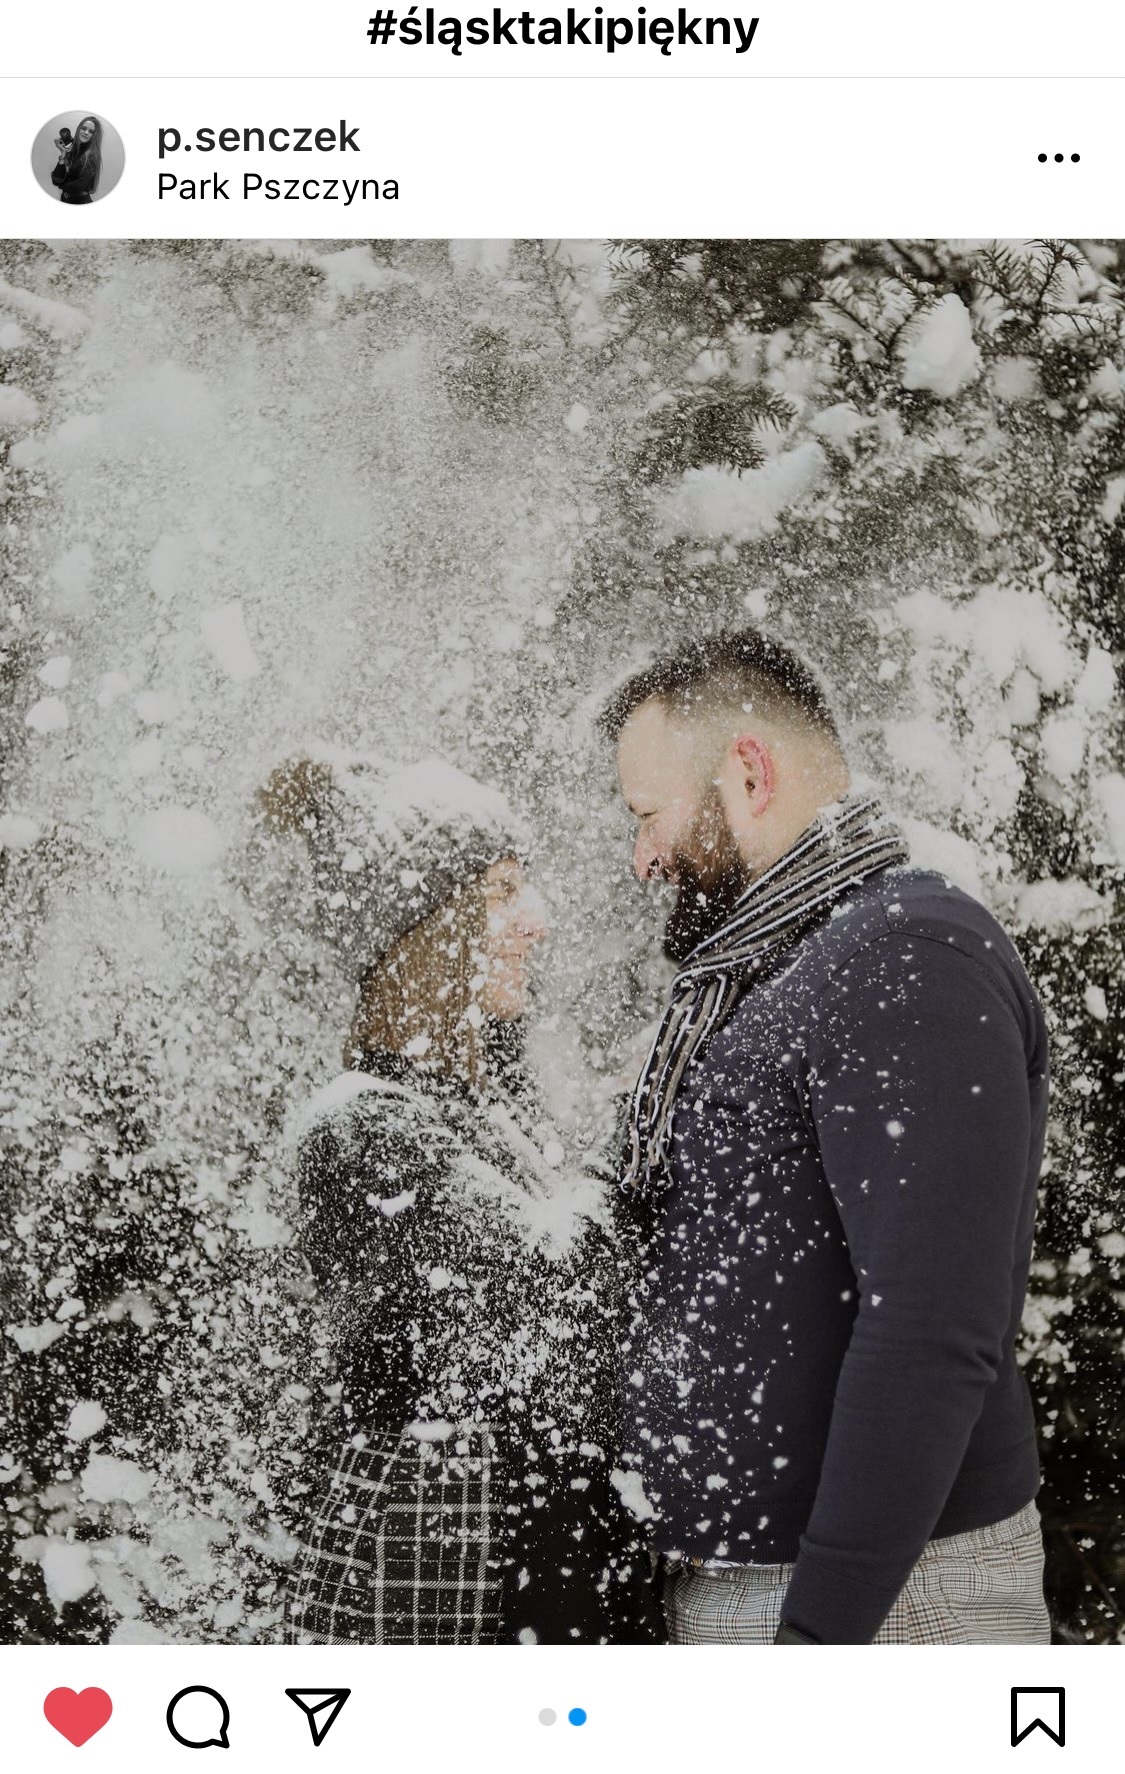 Para stojąca blisko siebie. Ubrana na zimowo w tle zdjęcia śnieżyca. #śląsktakipiękny